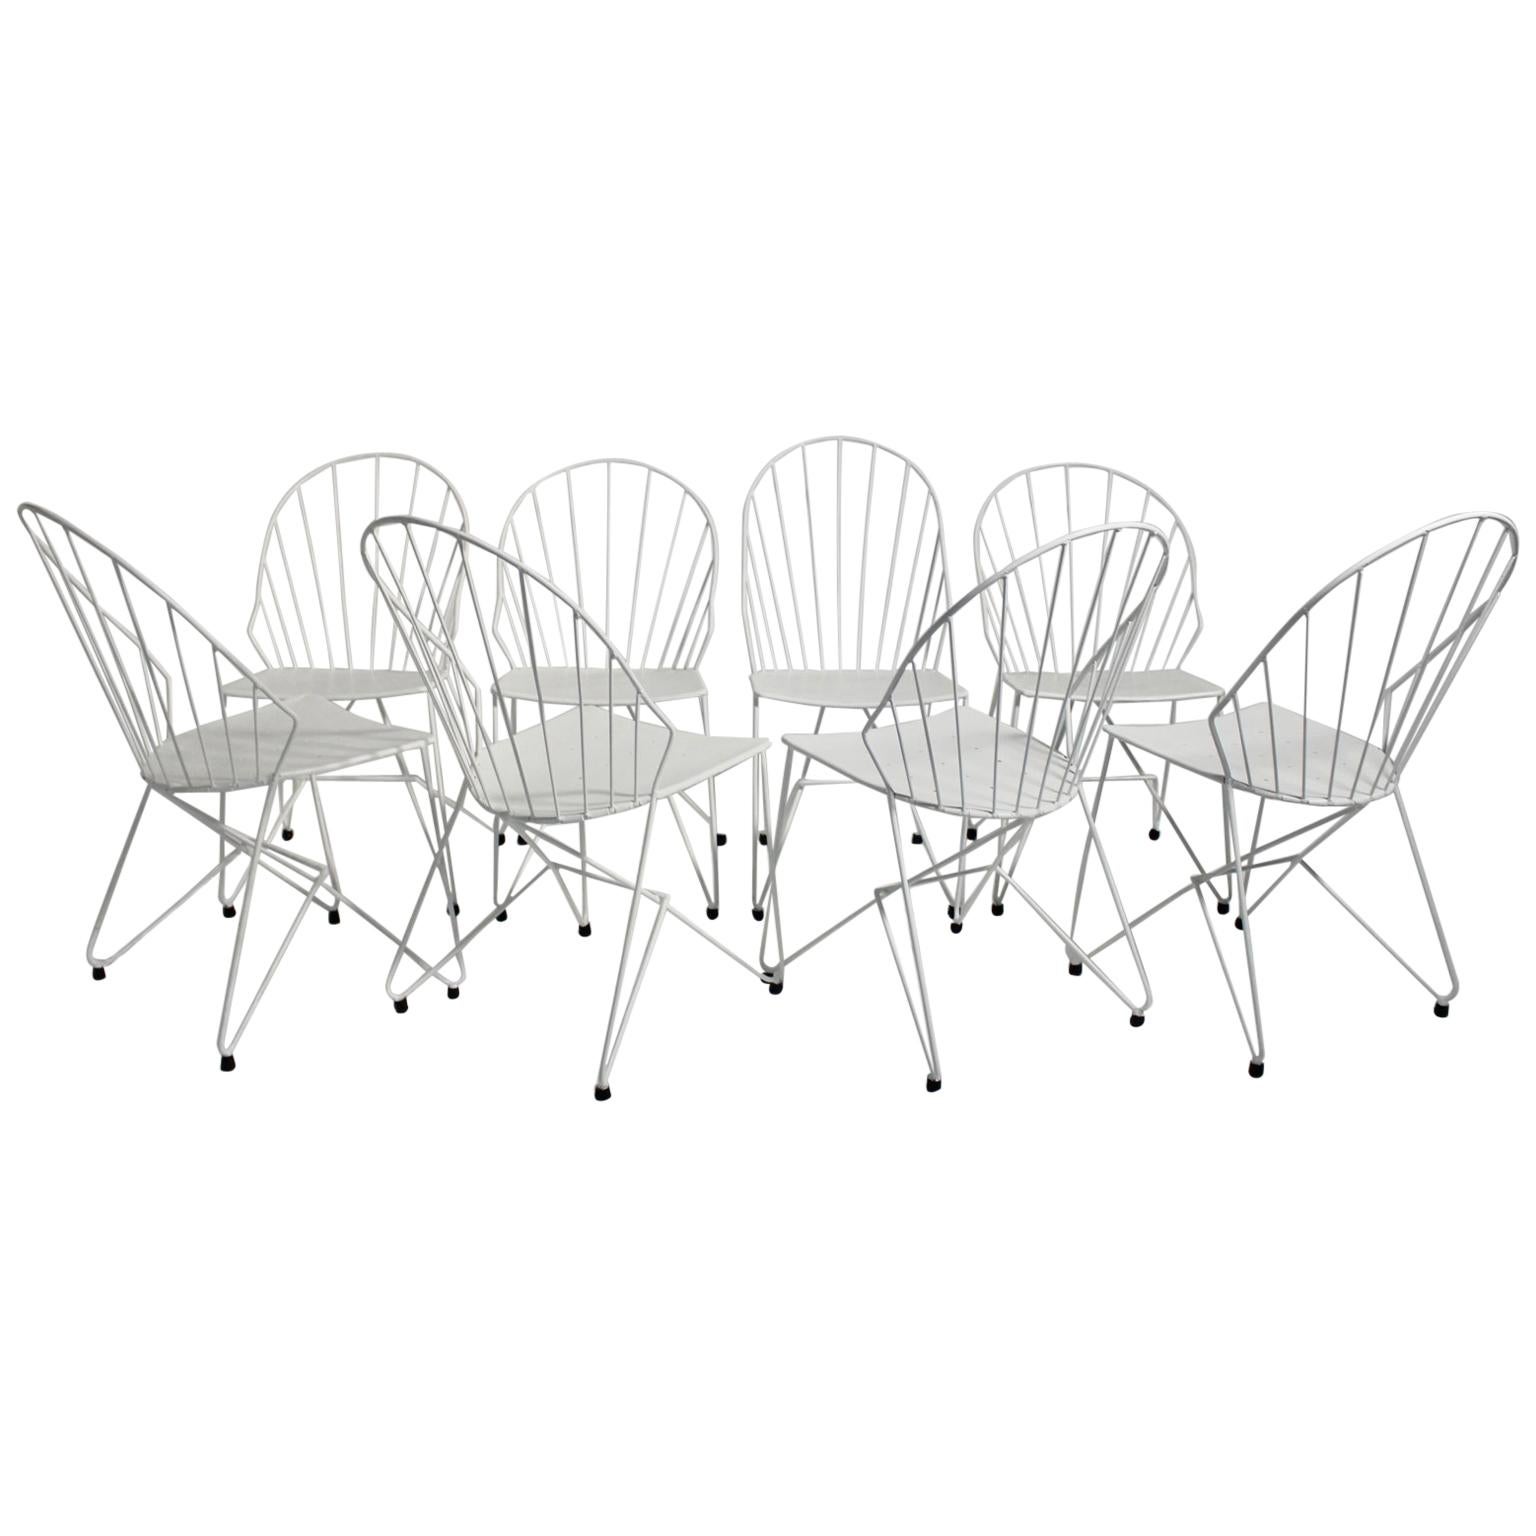 Mid-Century Modern White Metal Vintage Garden Chairs Auersperg by Sonett